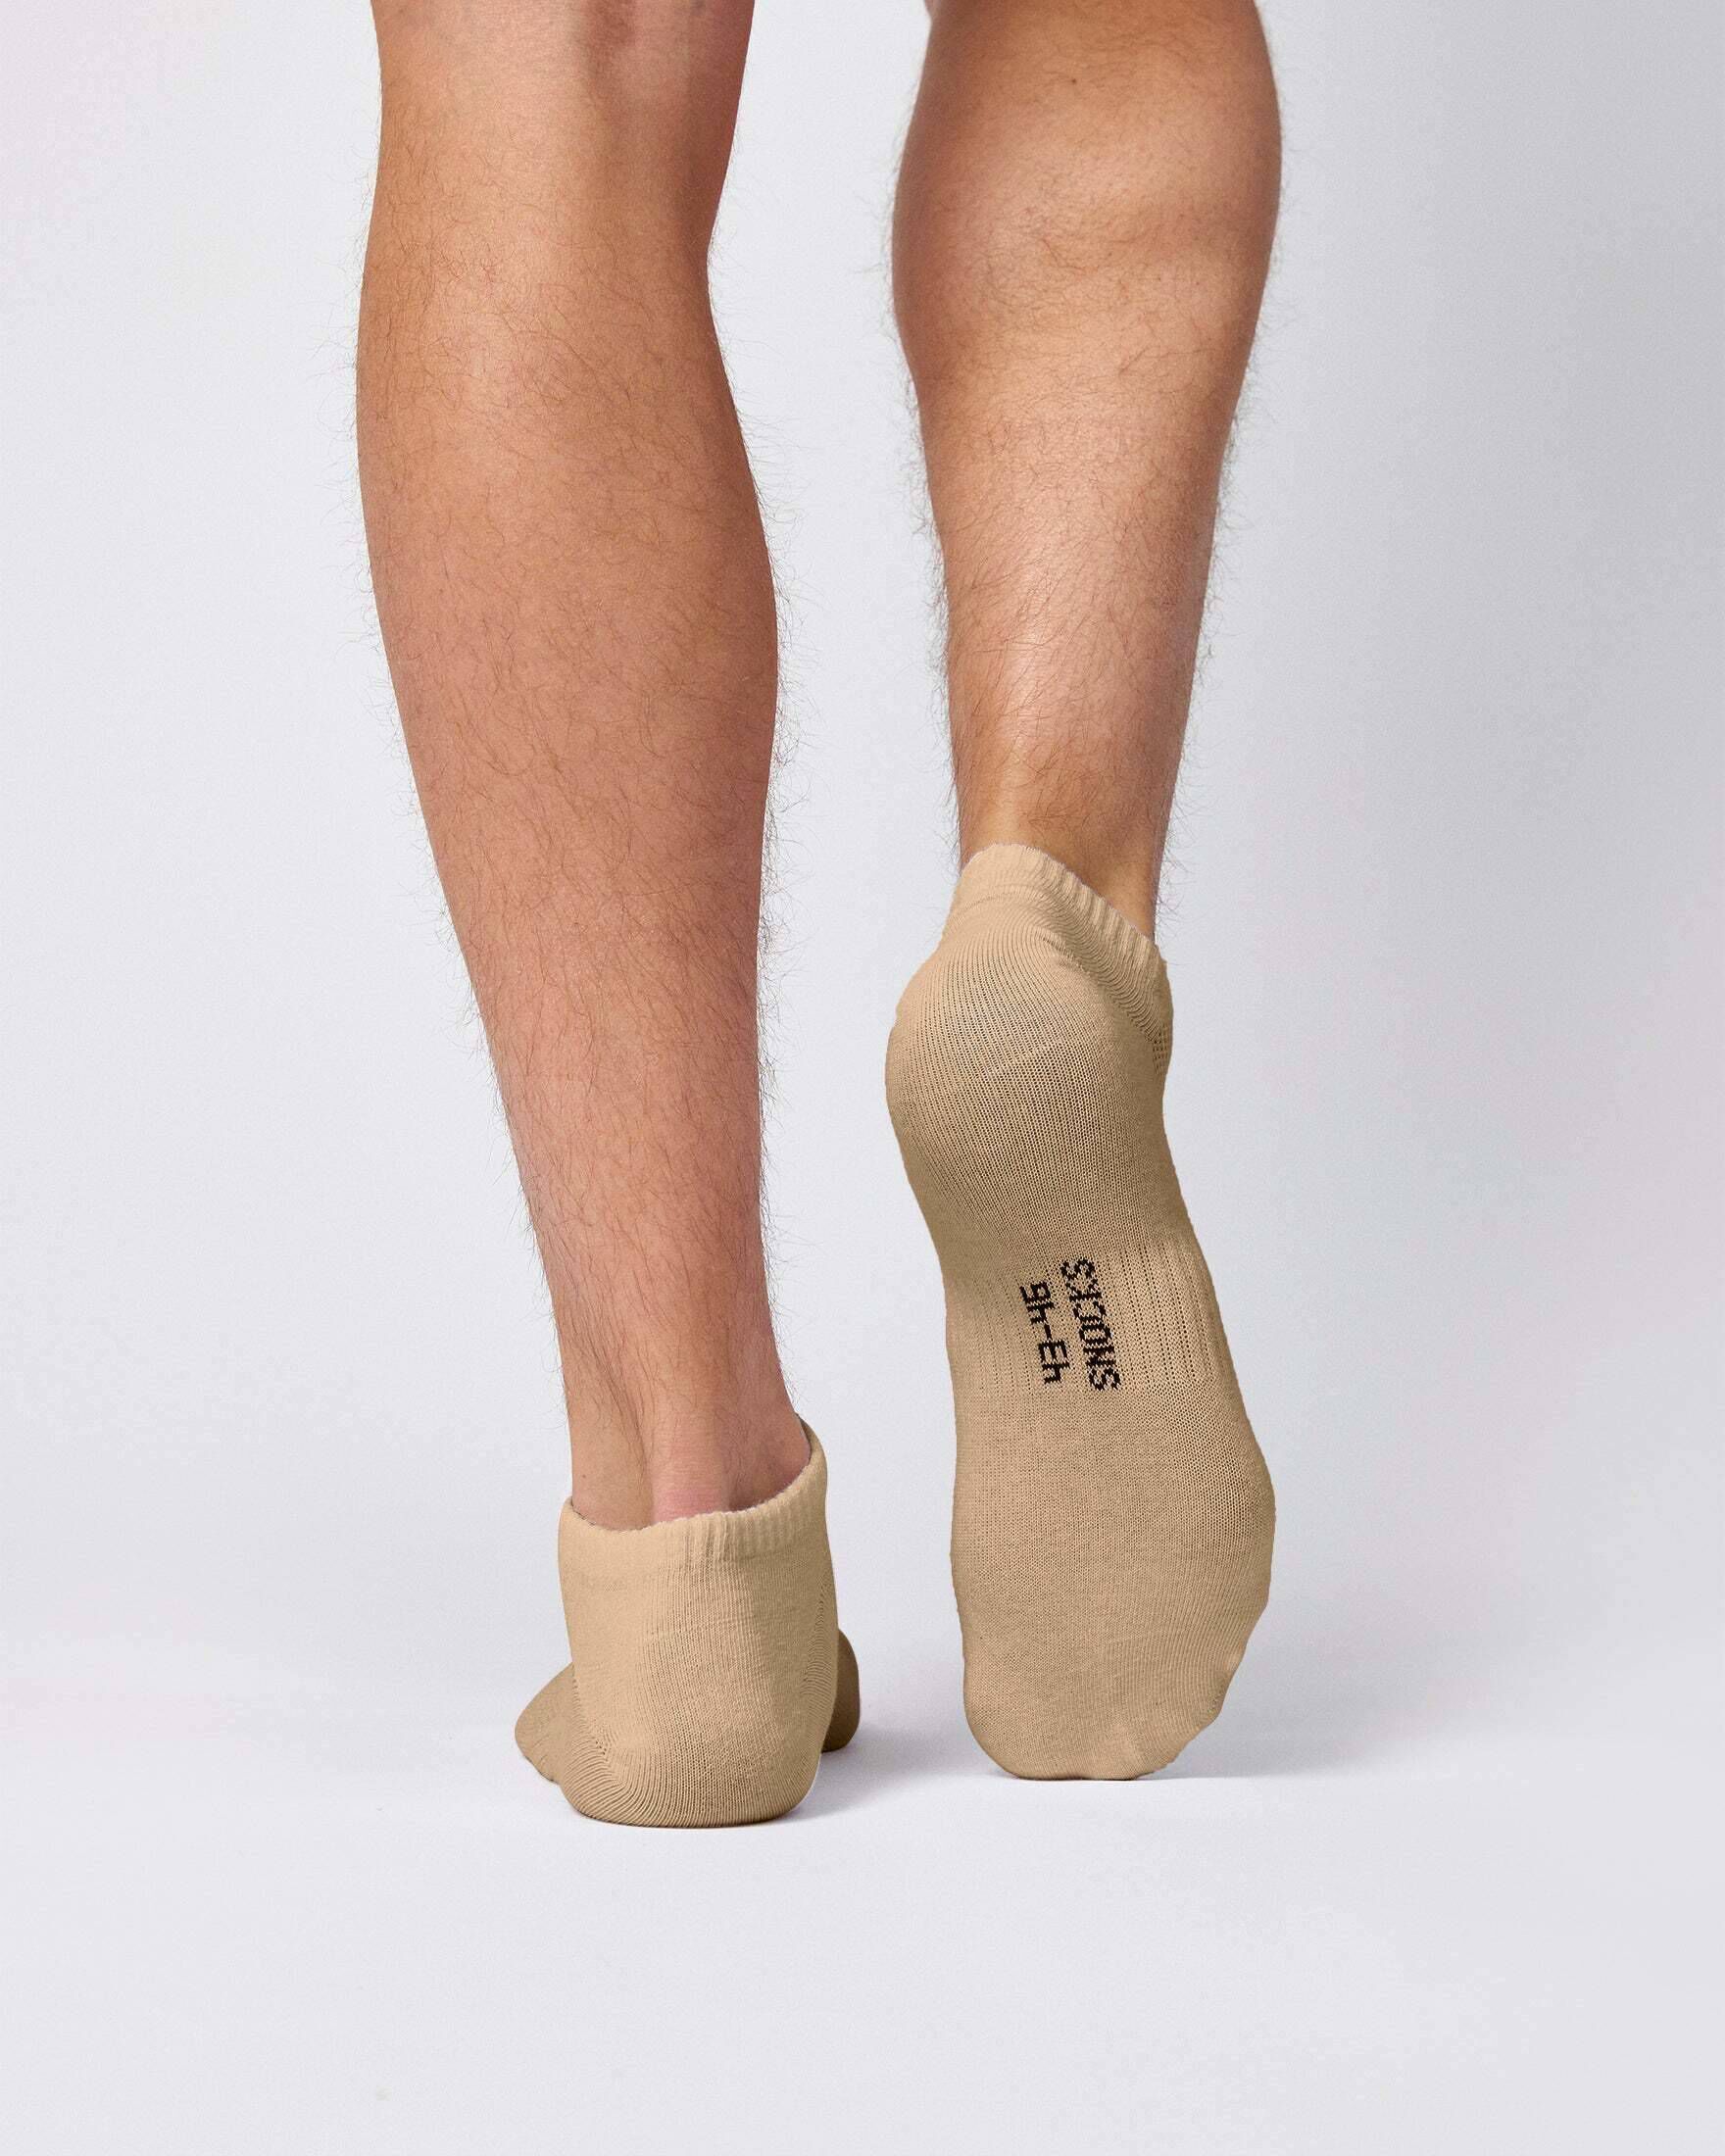 SNOCKS Damen und Herren Sneaker Socken aus Bio-Baumwolle 6er-Pack